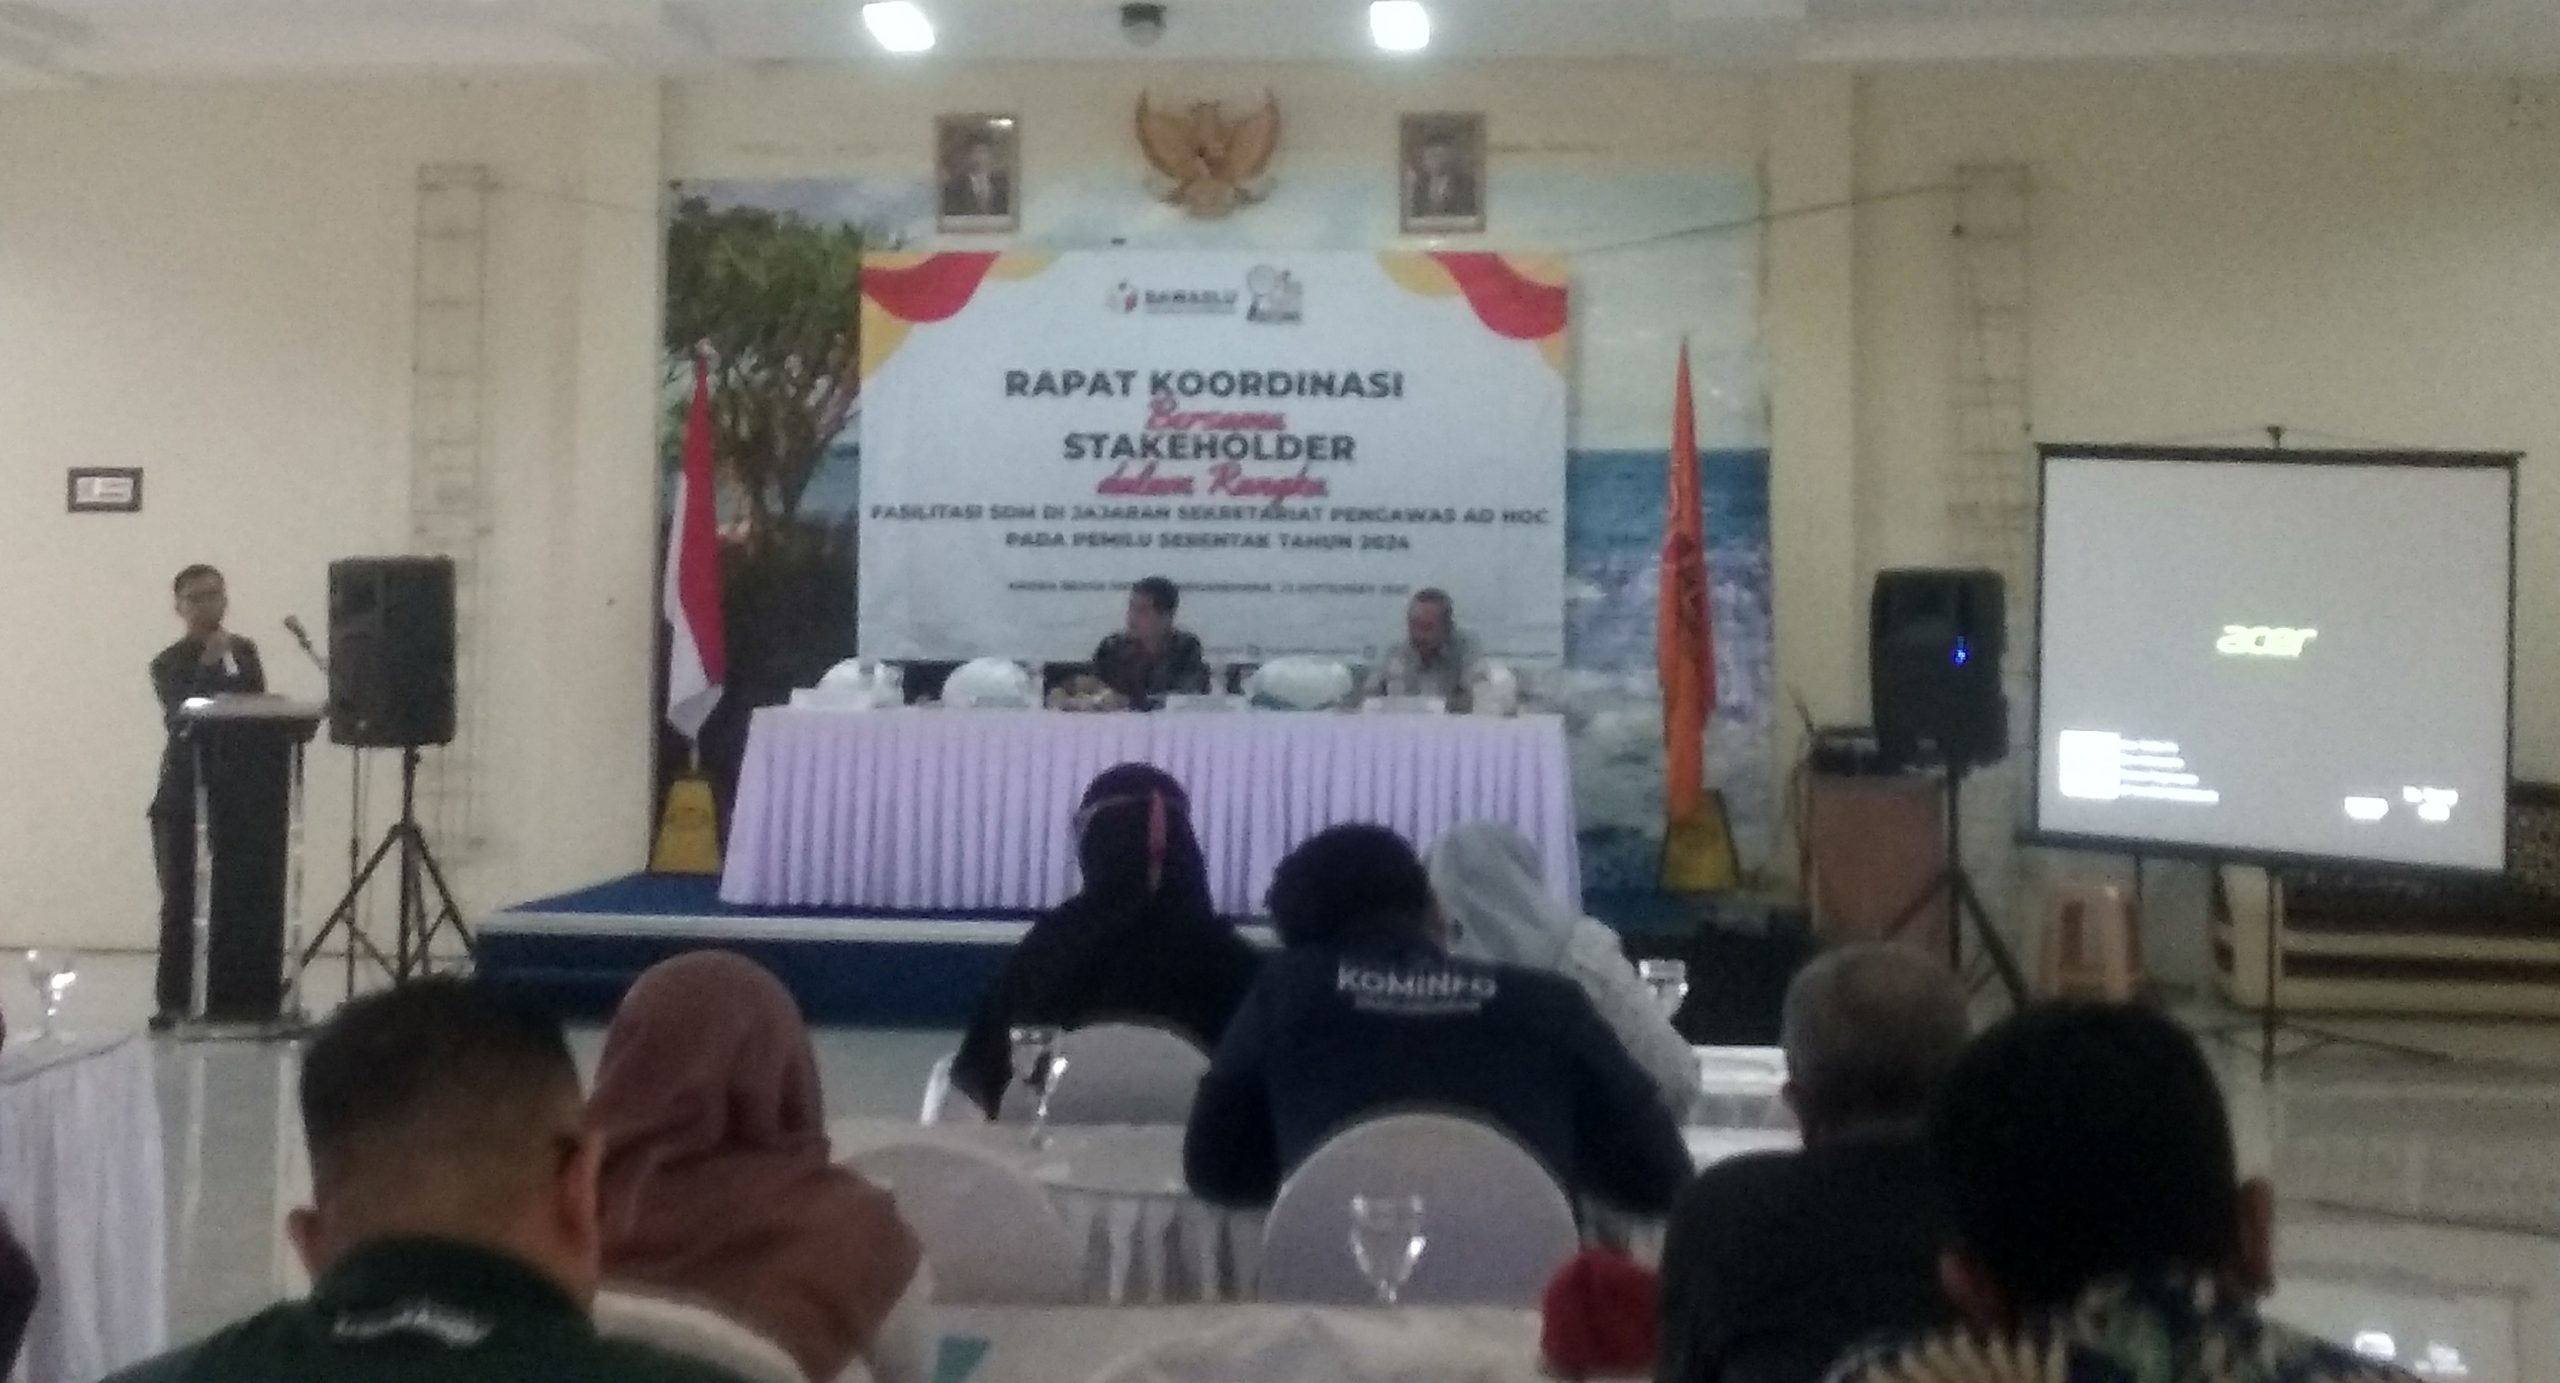 Bawaslu Kabupaten Pangandaran Gelar Rapat Koordinasi Bersama Stakeholder